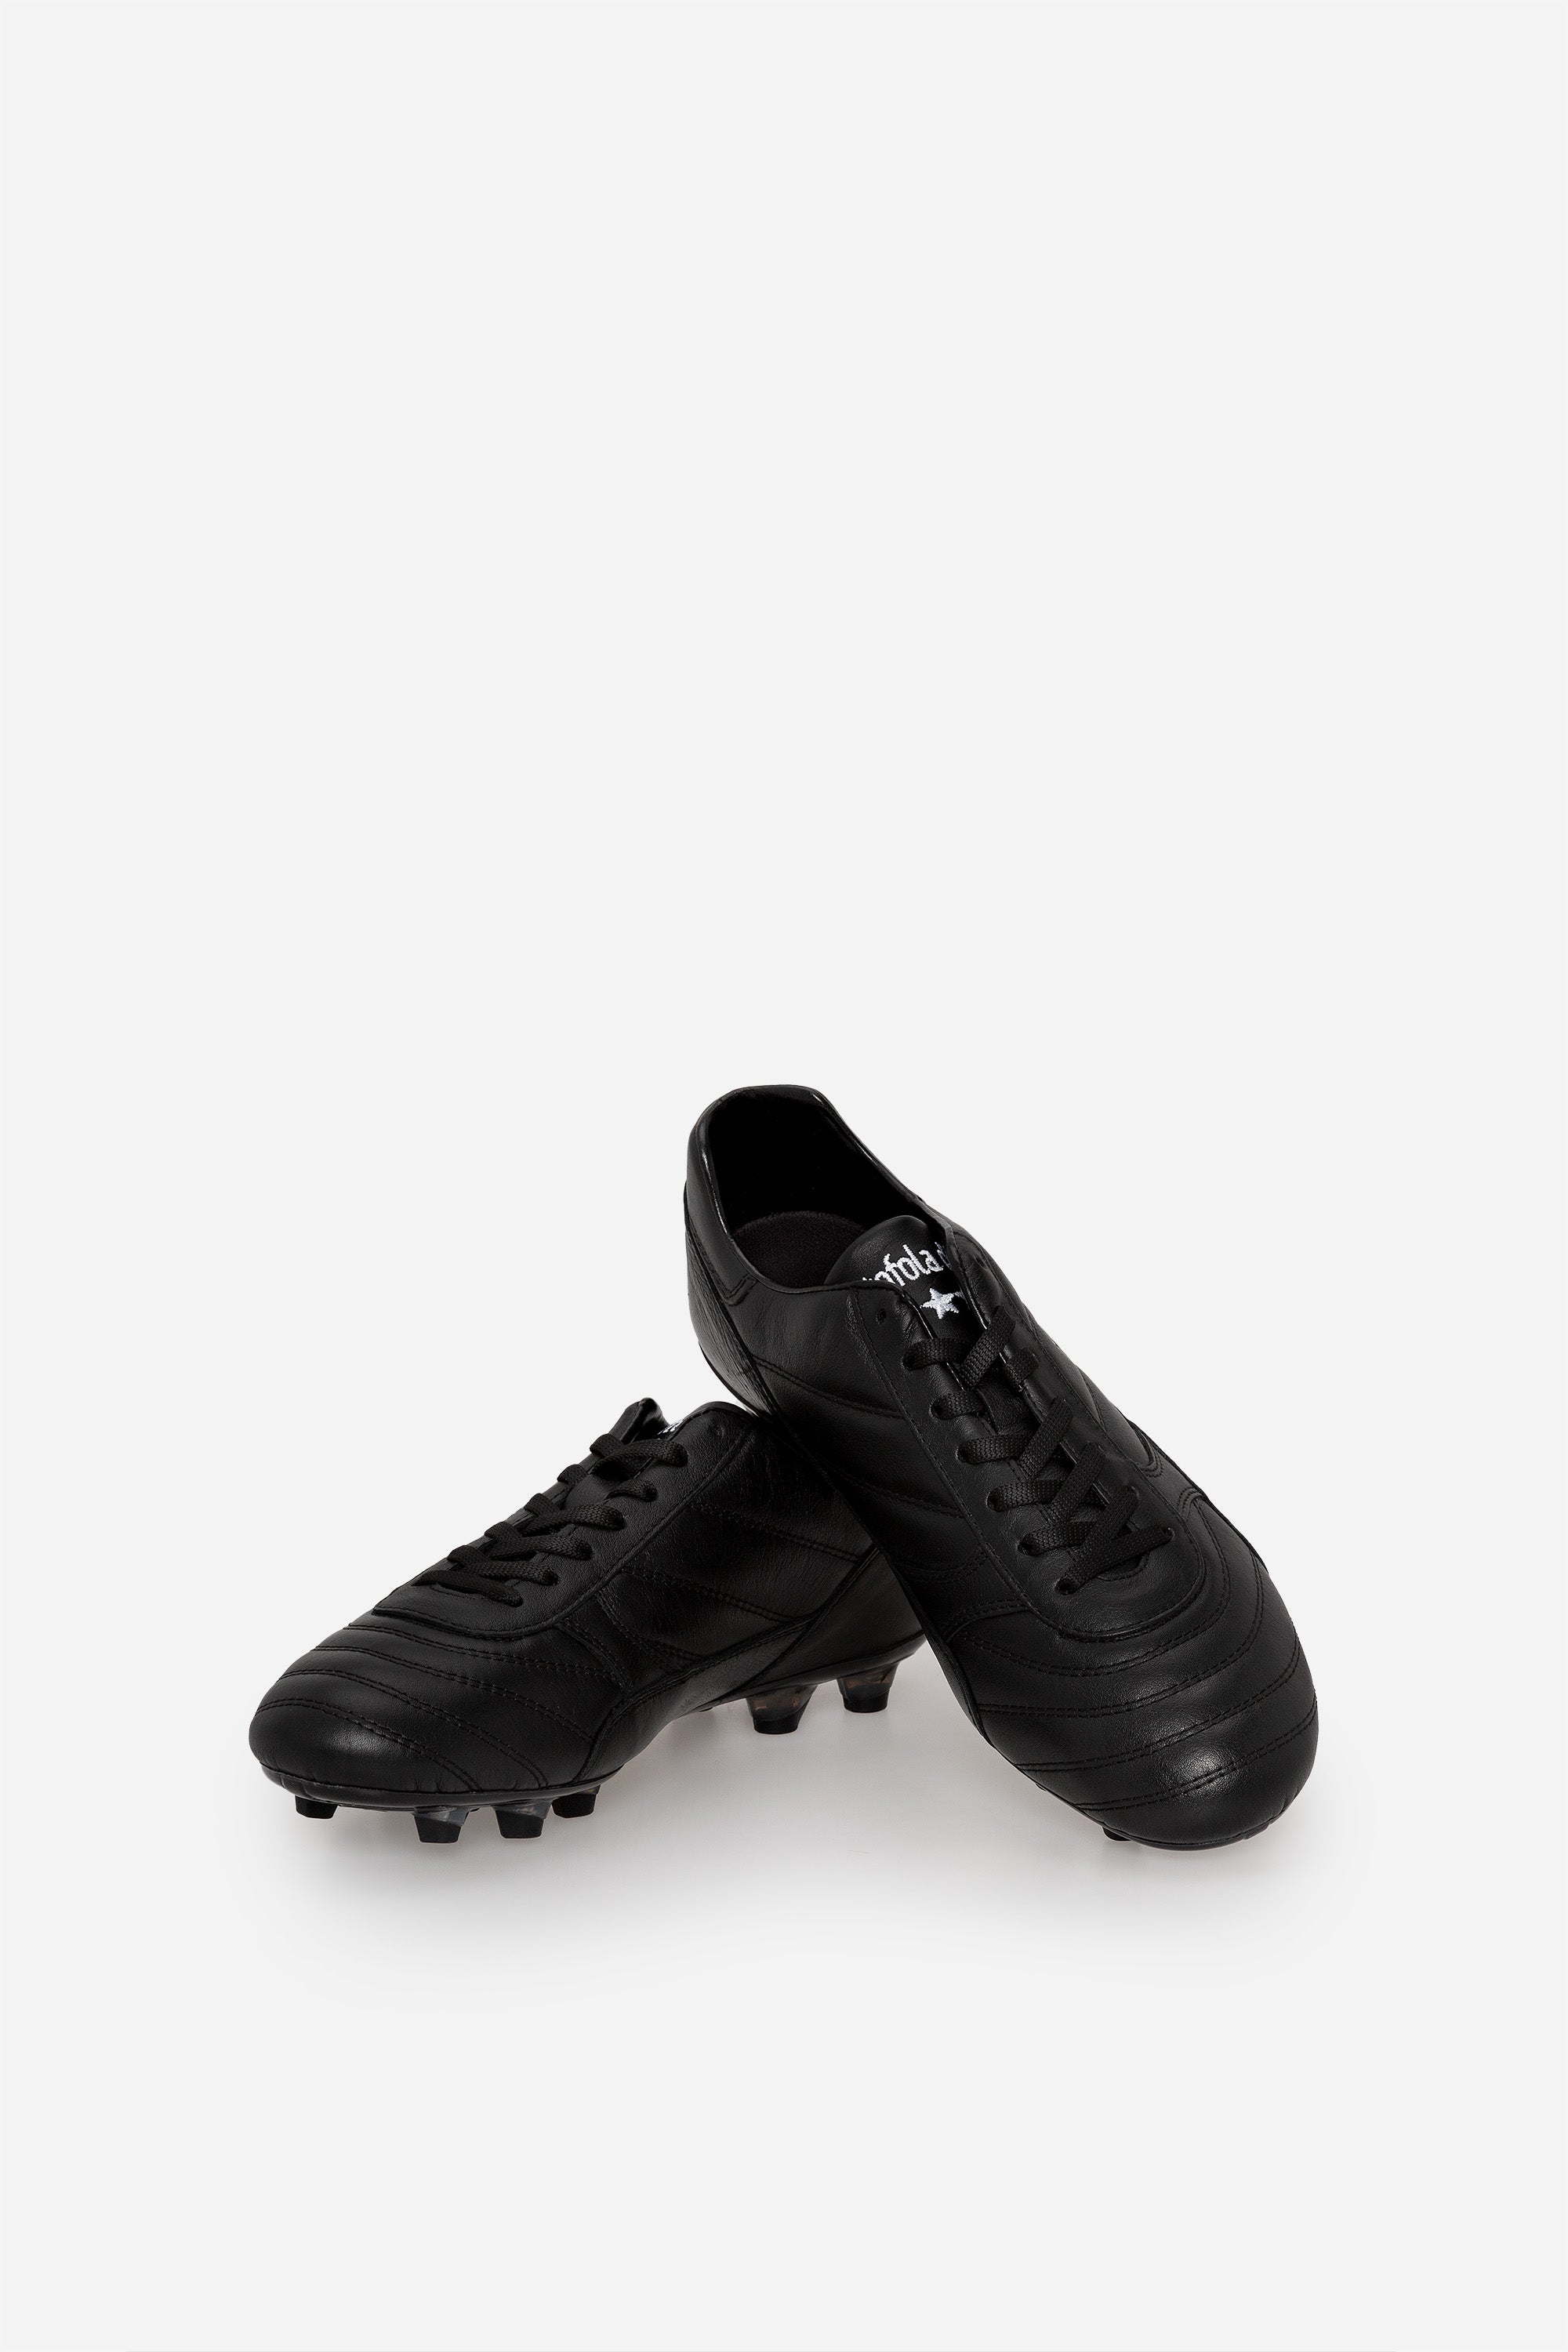 Pantofola d'Oro Alloro Leather Football Boot